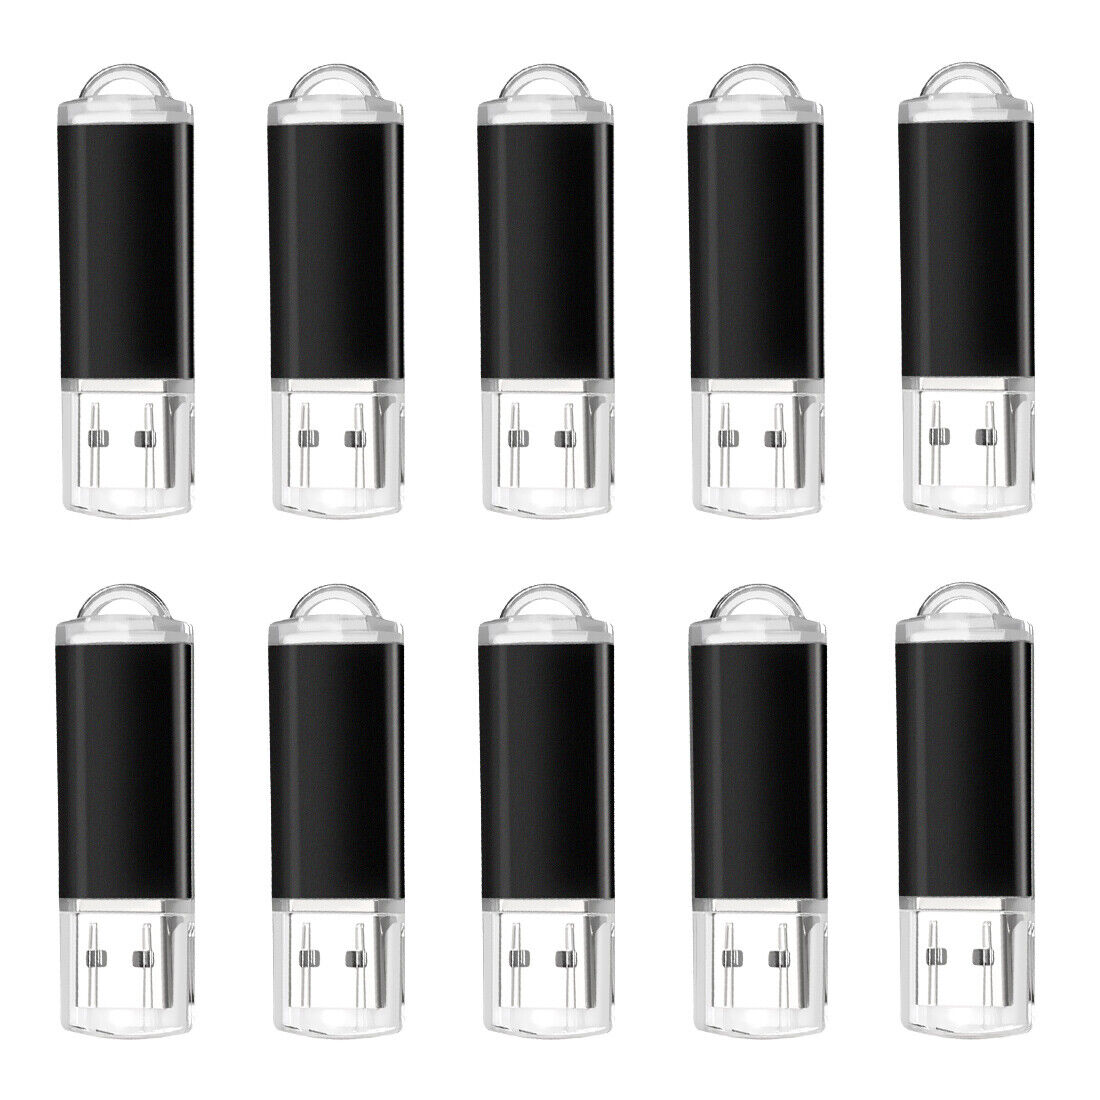 Wholesale 10packs/1gb/USB 2.0 flash drive Memory Stick Thumb drive lot